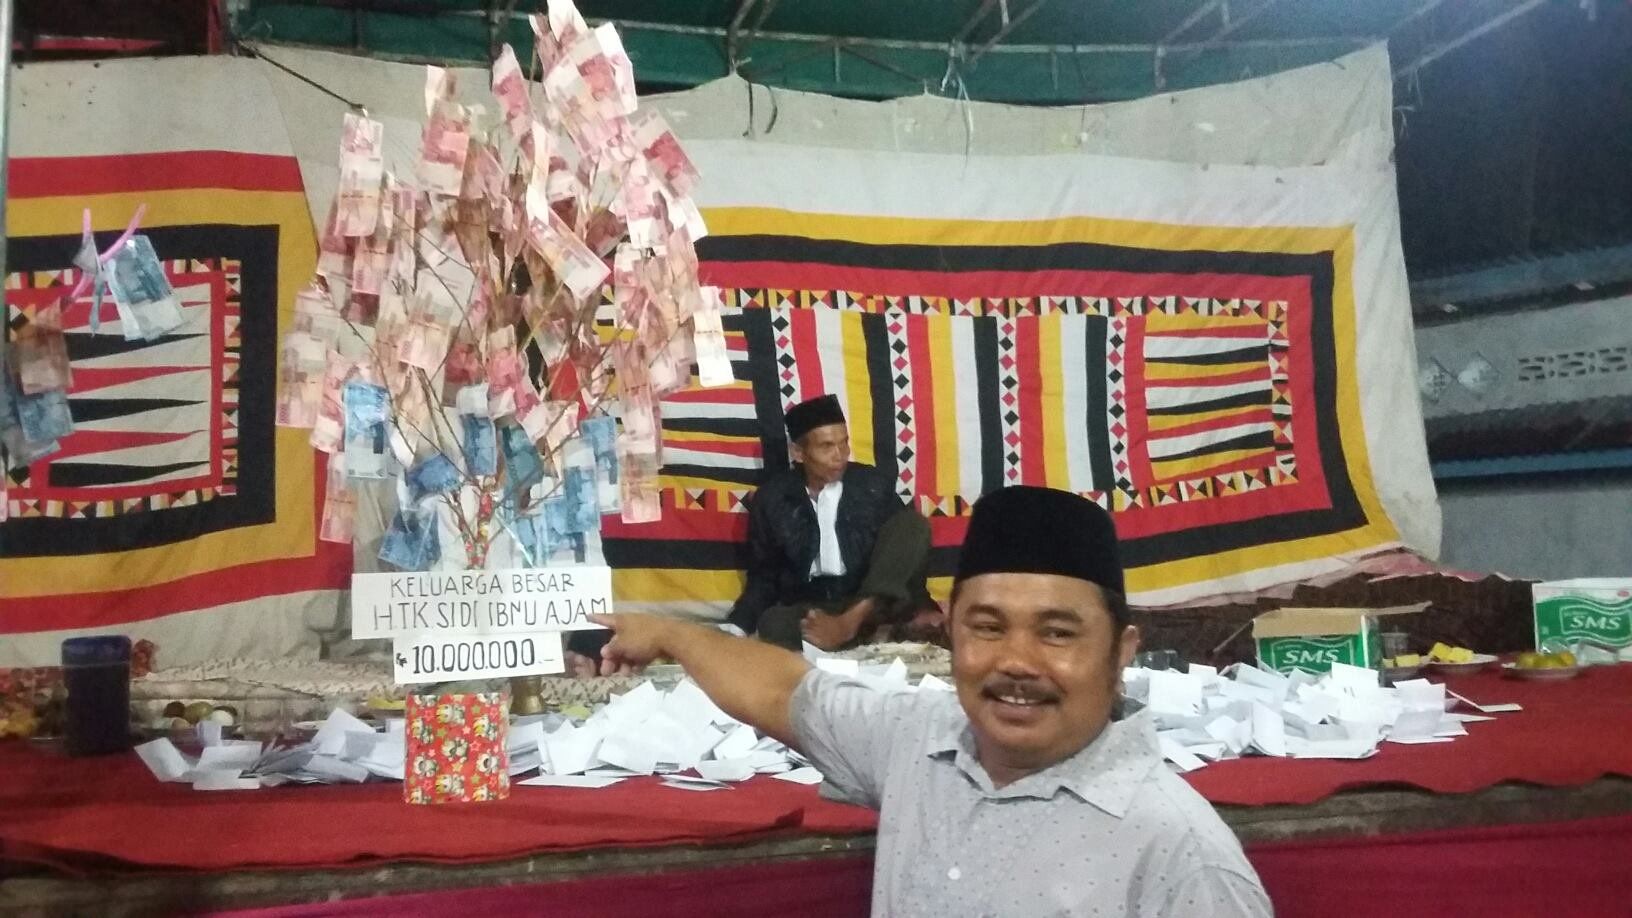  Maulid  Nabi Ini 5 Tradisi Unik Perayaannya di Indonesia